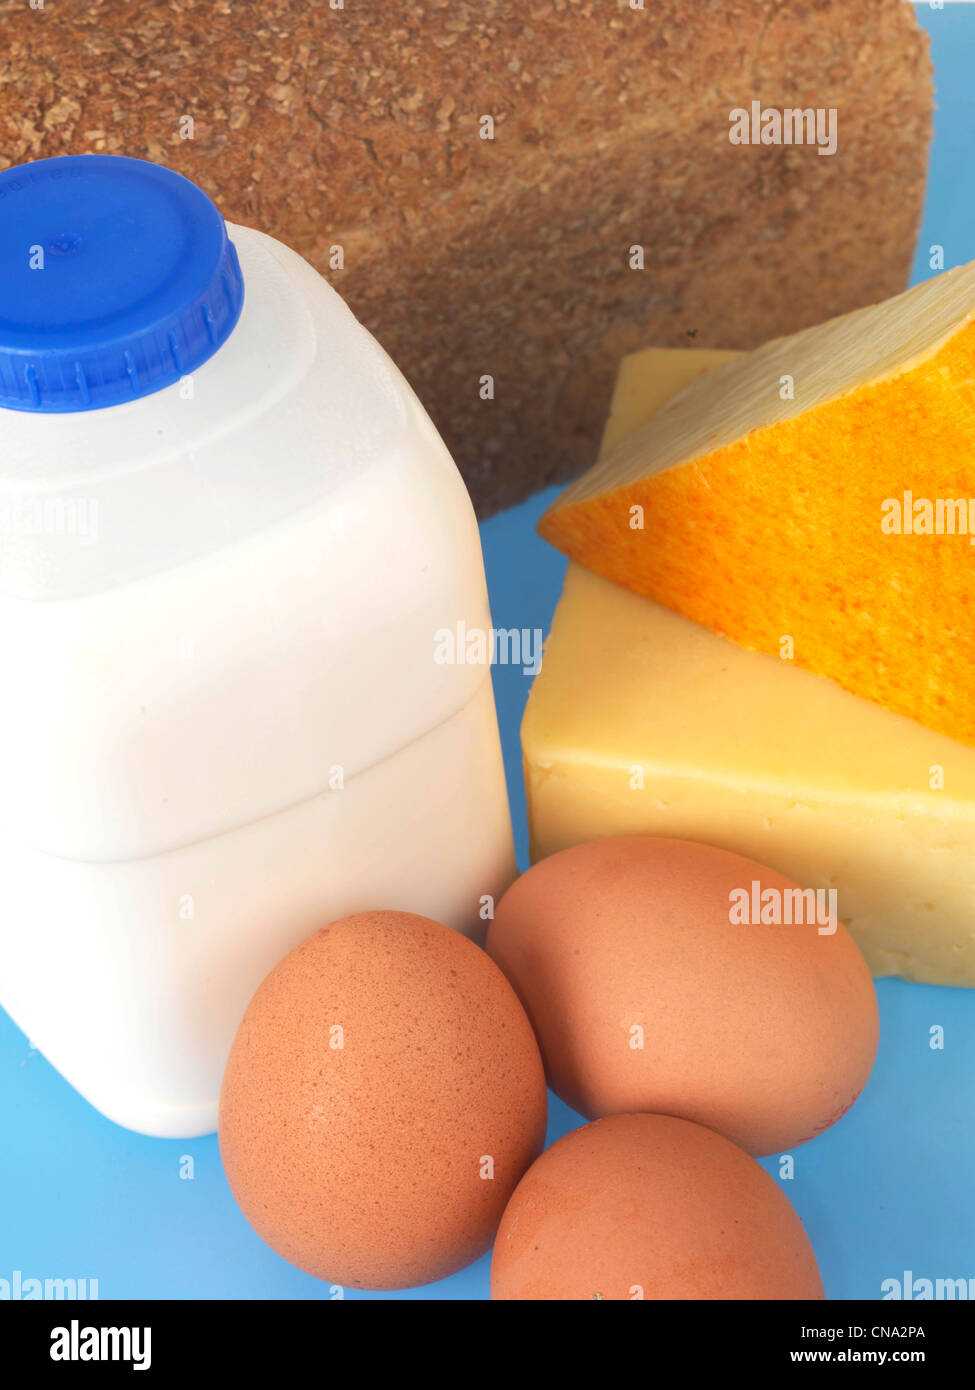 Como cocer huevos? - Huevos y quesos - Blog de MªGUADALUP CHINCOA